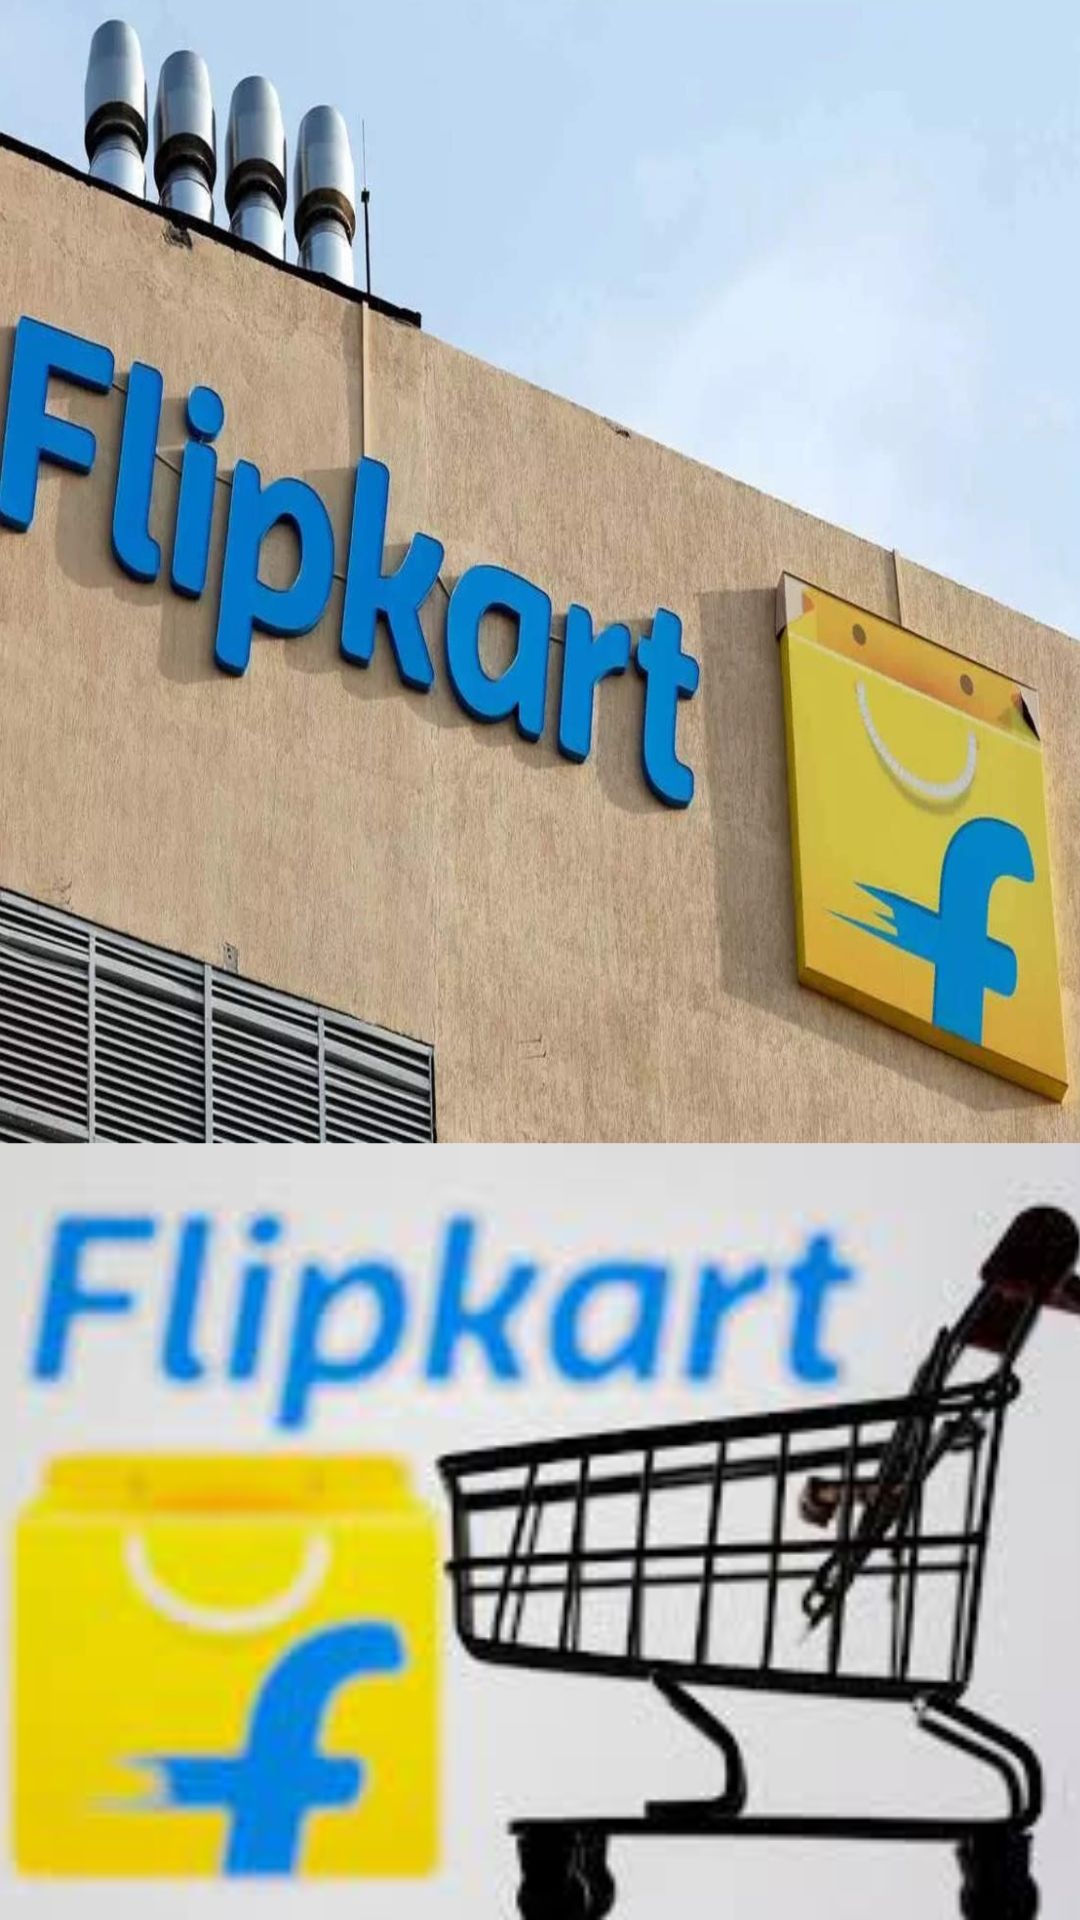 Flipkart की वैल्युएशन दो साल में 5 अरब डॉलर घट गई, जानें वजह और कंपनी पर वॉलमार्ट का स्वामित्व अब कितना?